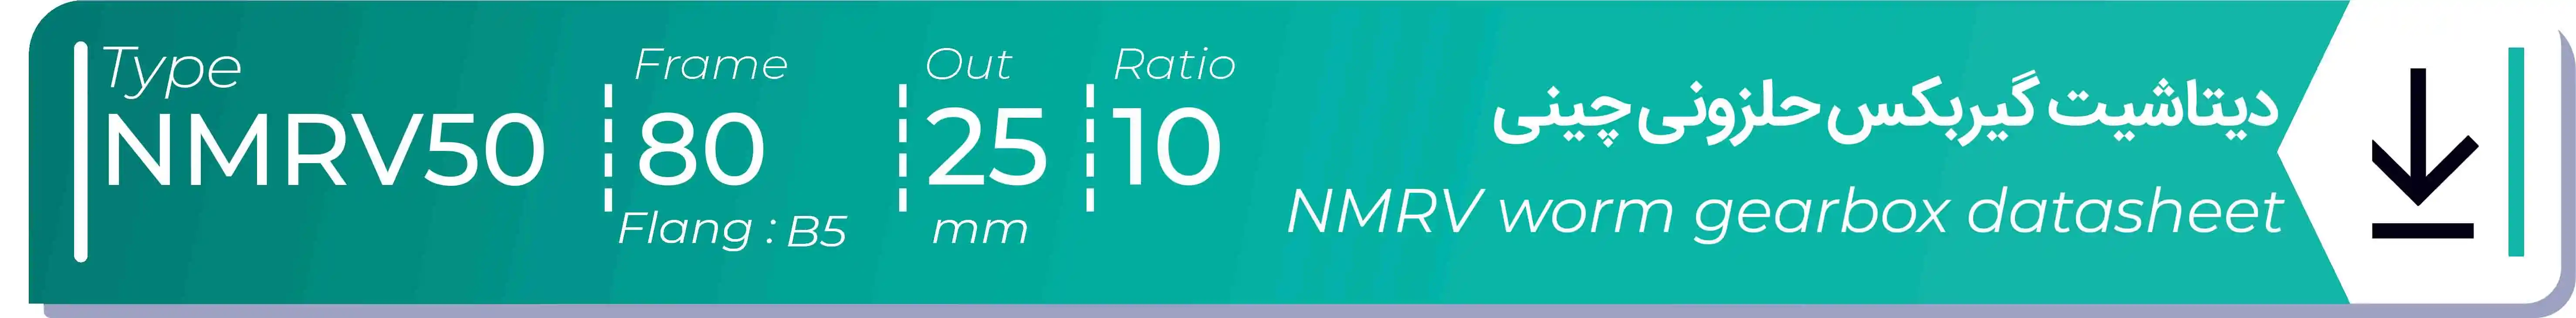  دیتاشیت و مشخصات فنی گیربکس حلزونی چینی   NMRV50  -  با خروجی 25- میلی متر و نسبت10 و فریم 80